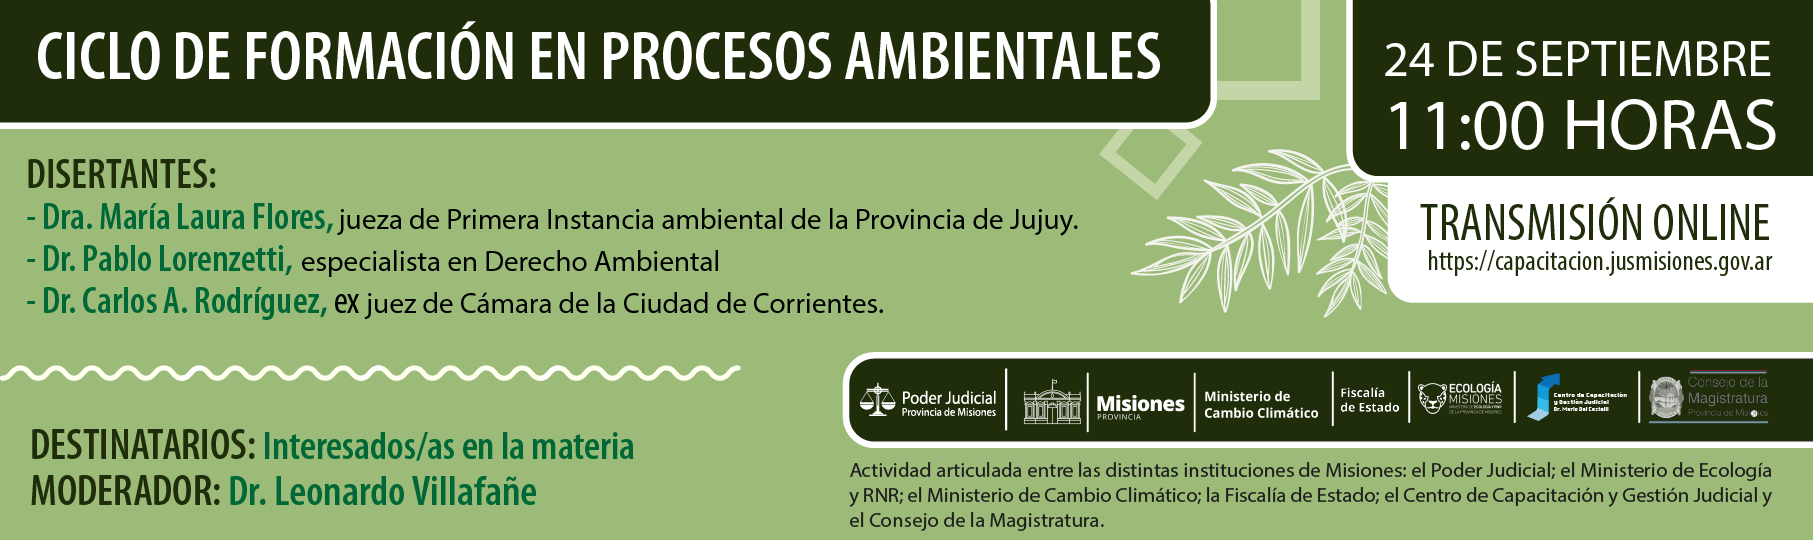 Cr3_Ciclo_de_Formacin_en_Procesos_Ambientales-01